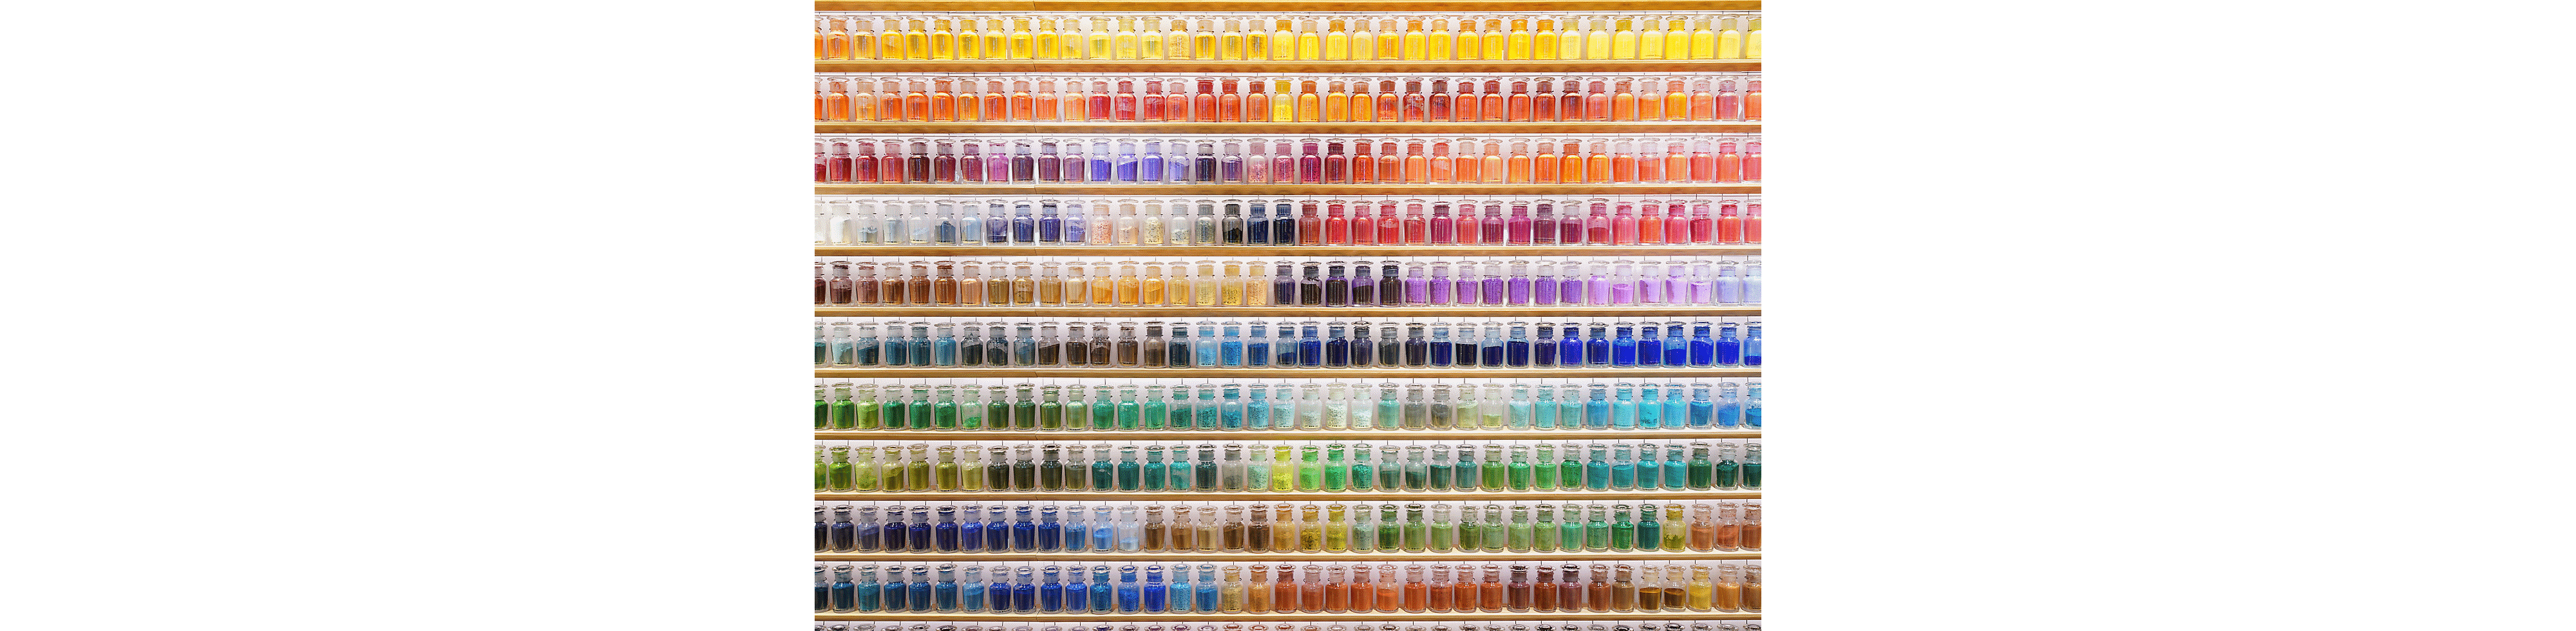 مثال لصورة جدار مليء بالزجاجات الملونة